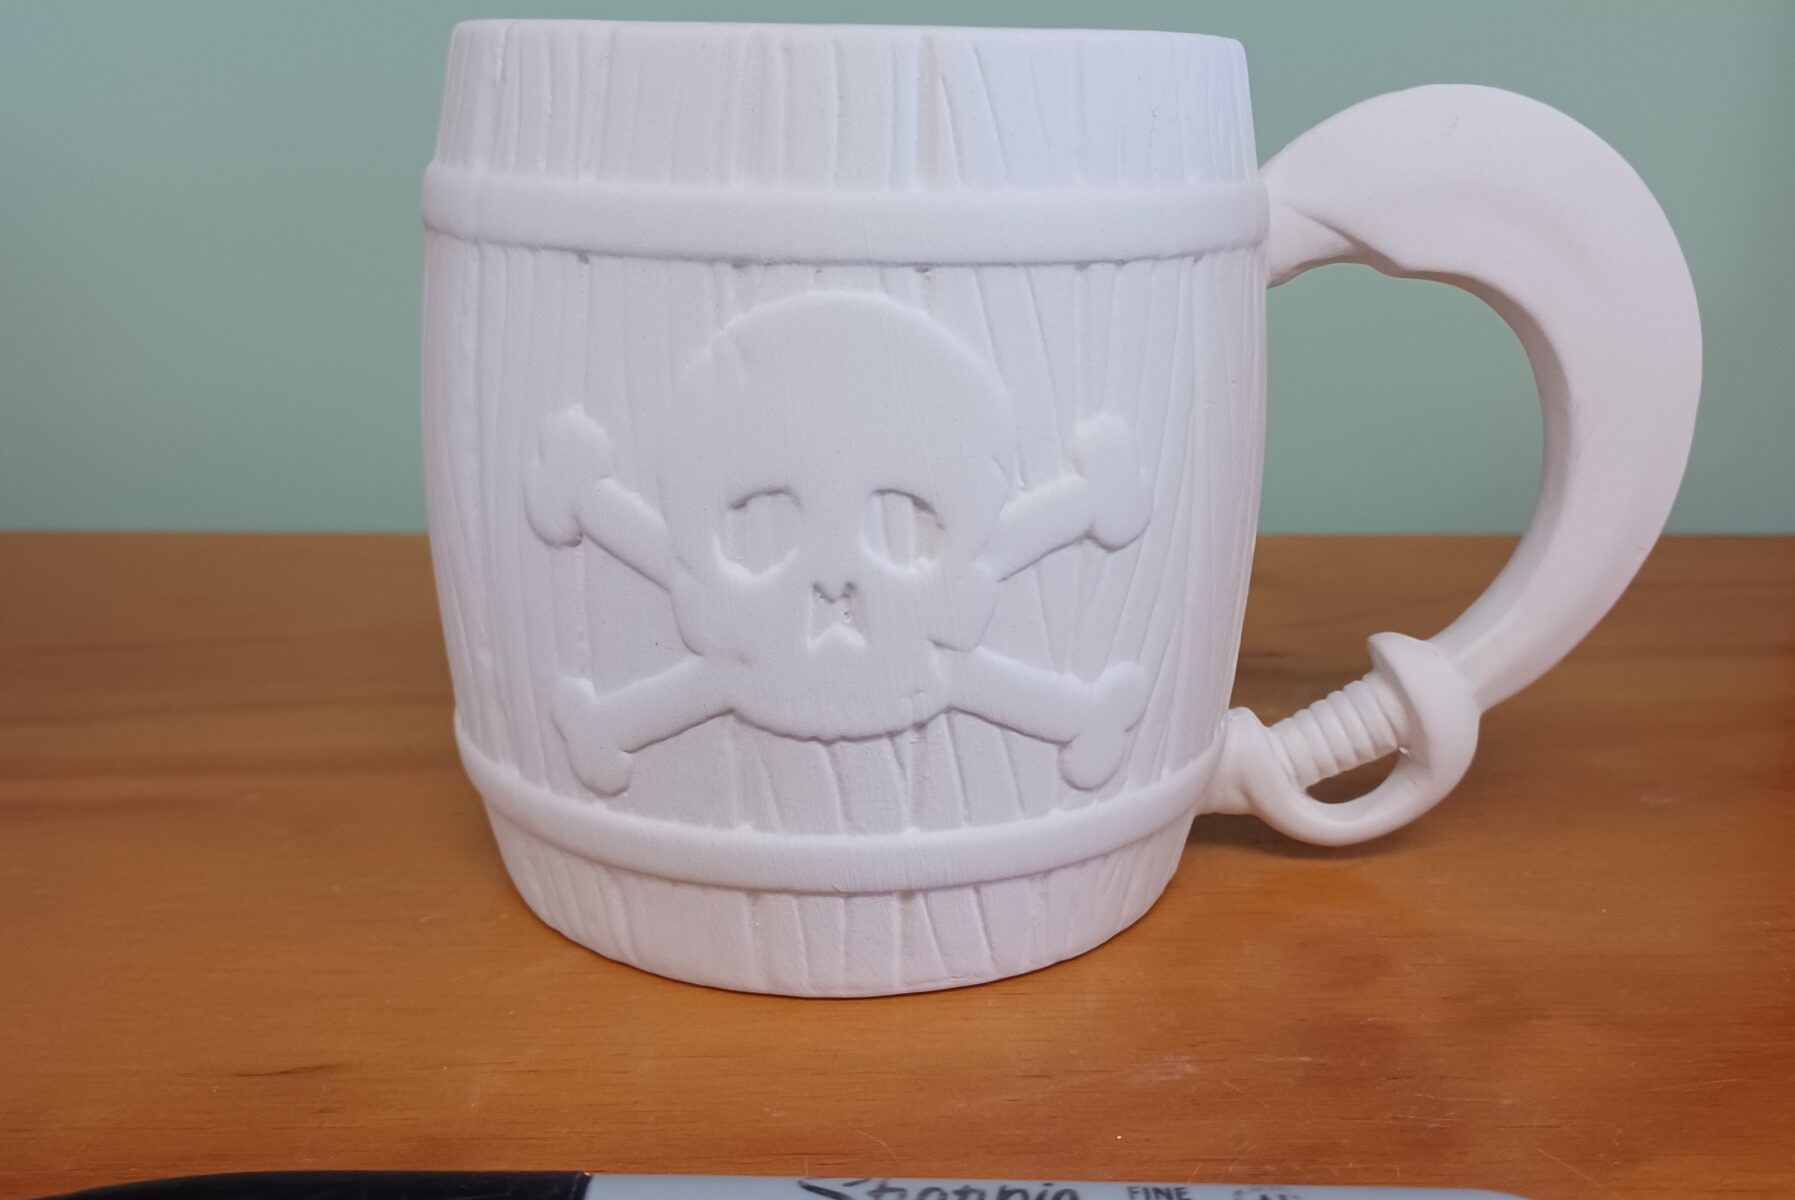 Pirate Mug